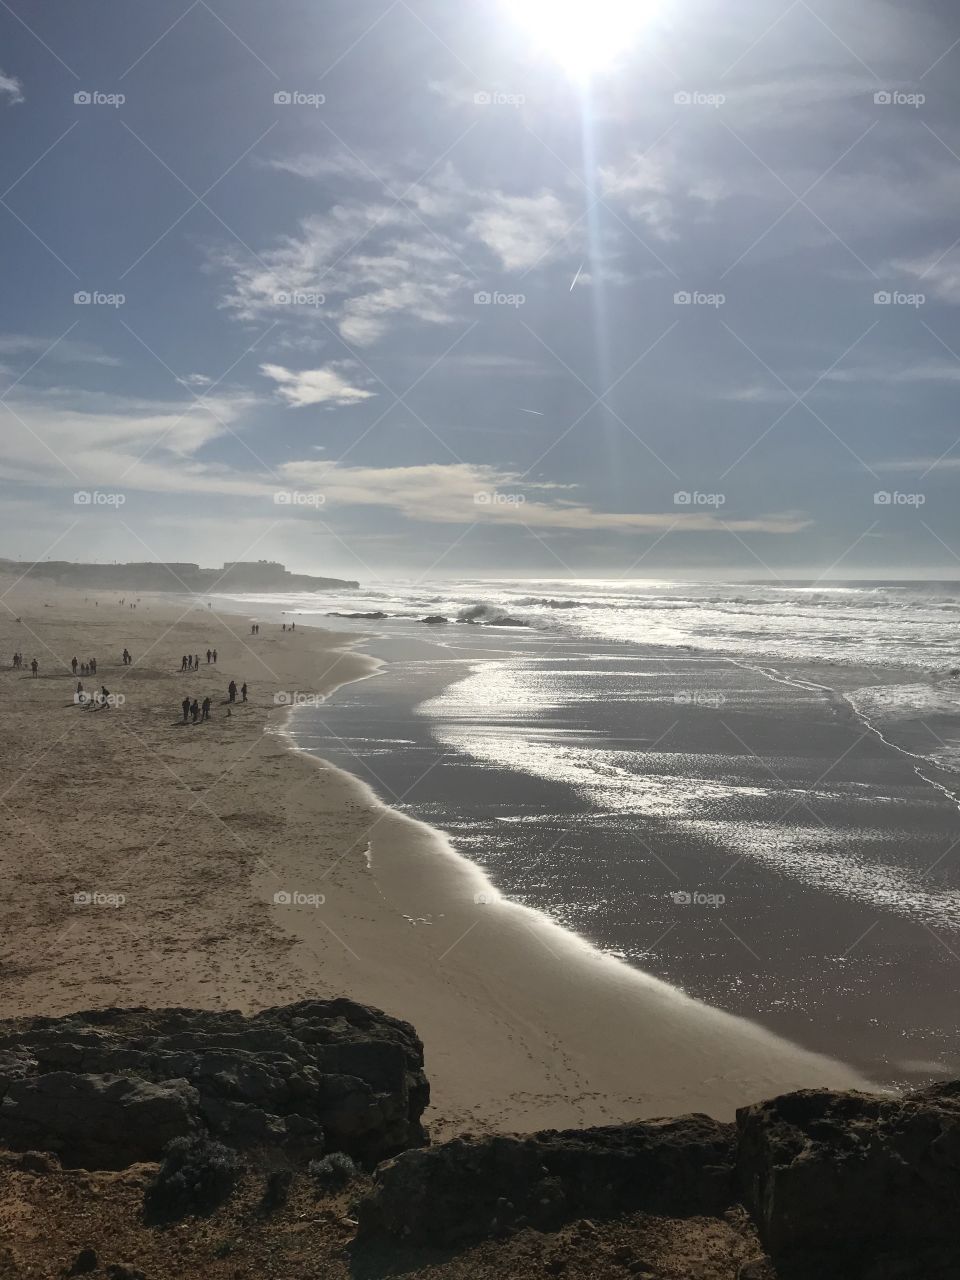 Praia do guincho, Portugal 🇵🇹